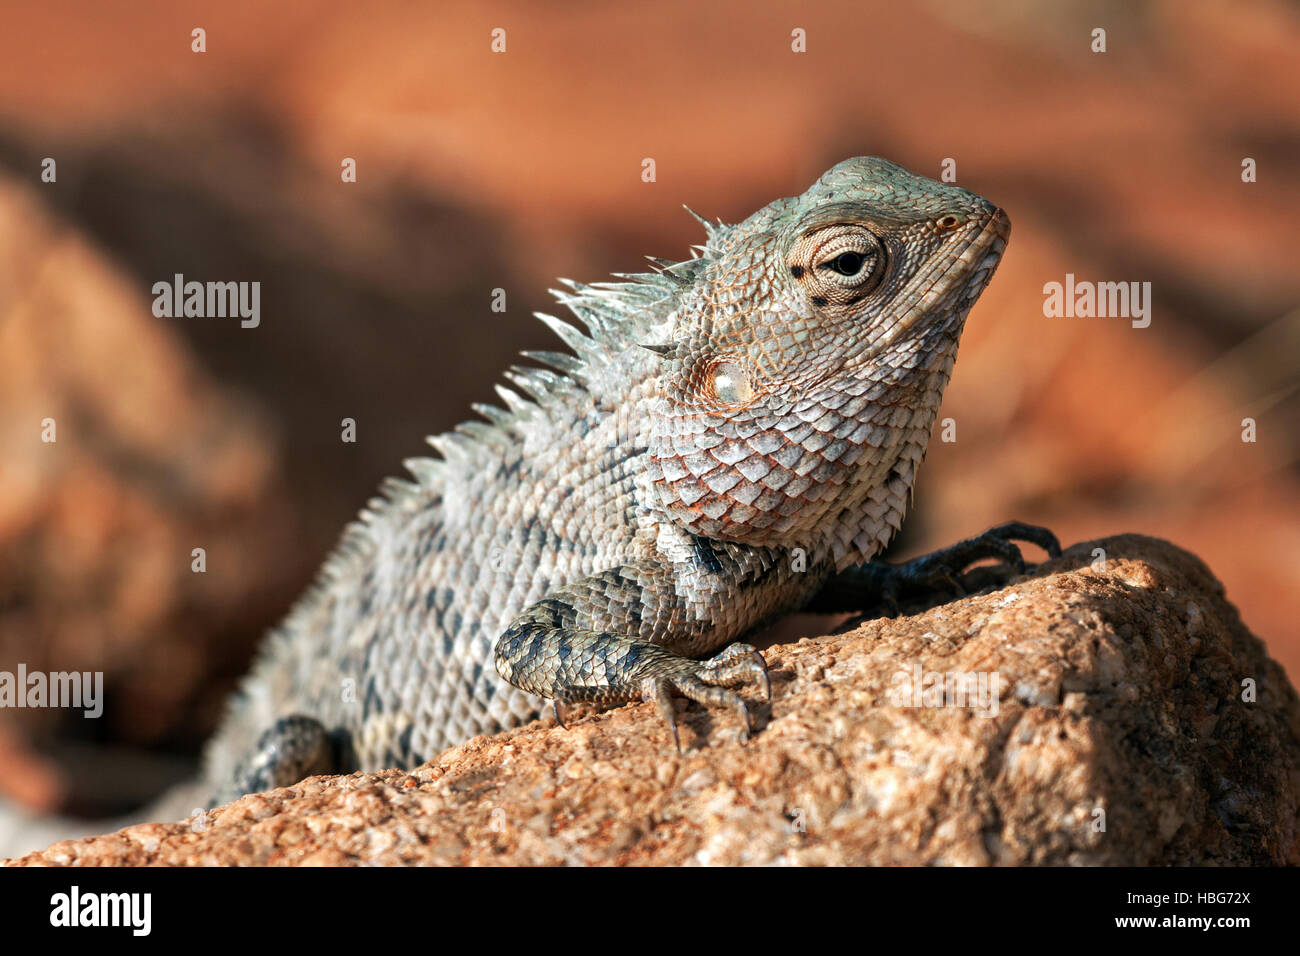 Oriental garden lizard, also eastern garden lizard or changeable lizard (Calotes versicolor) on stone, Sri Lanka Stock Photo